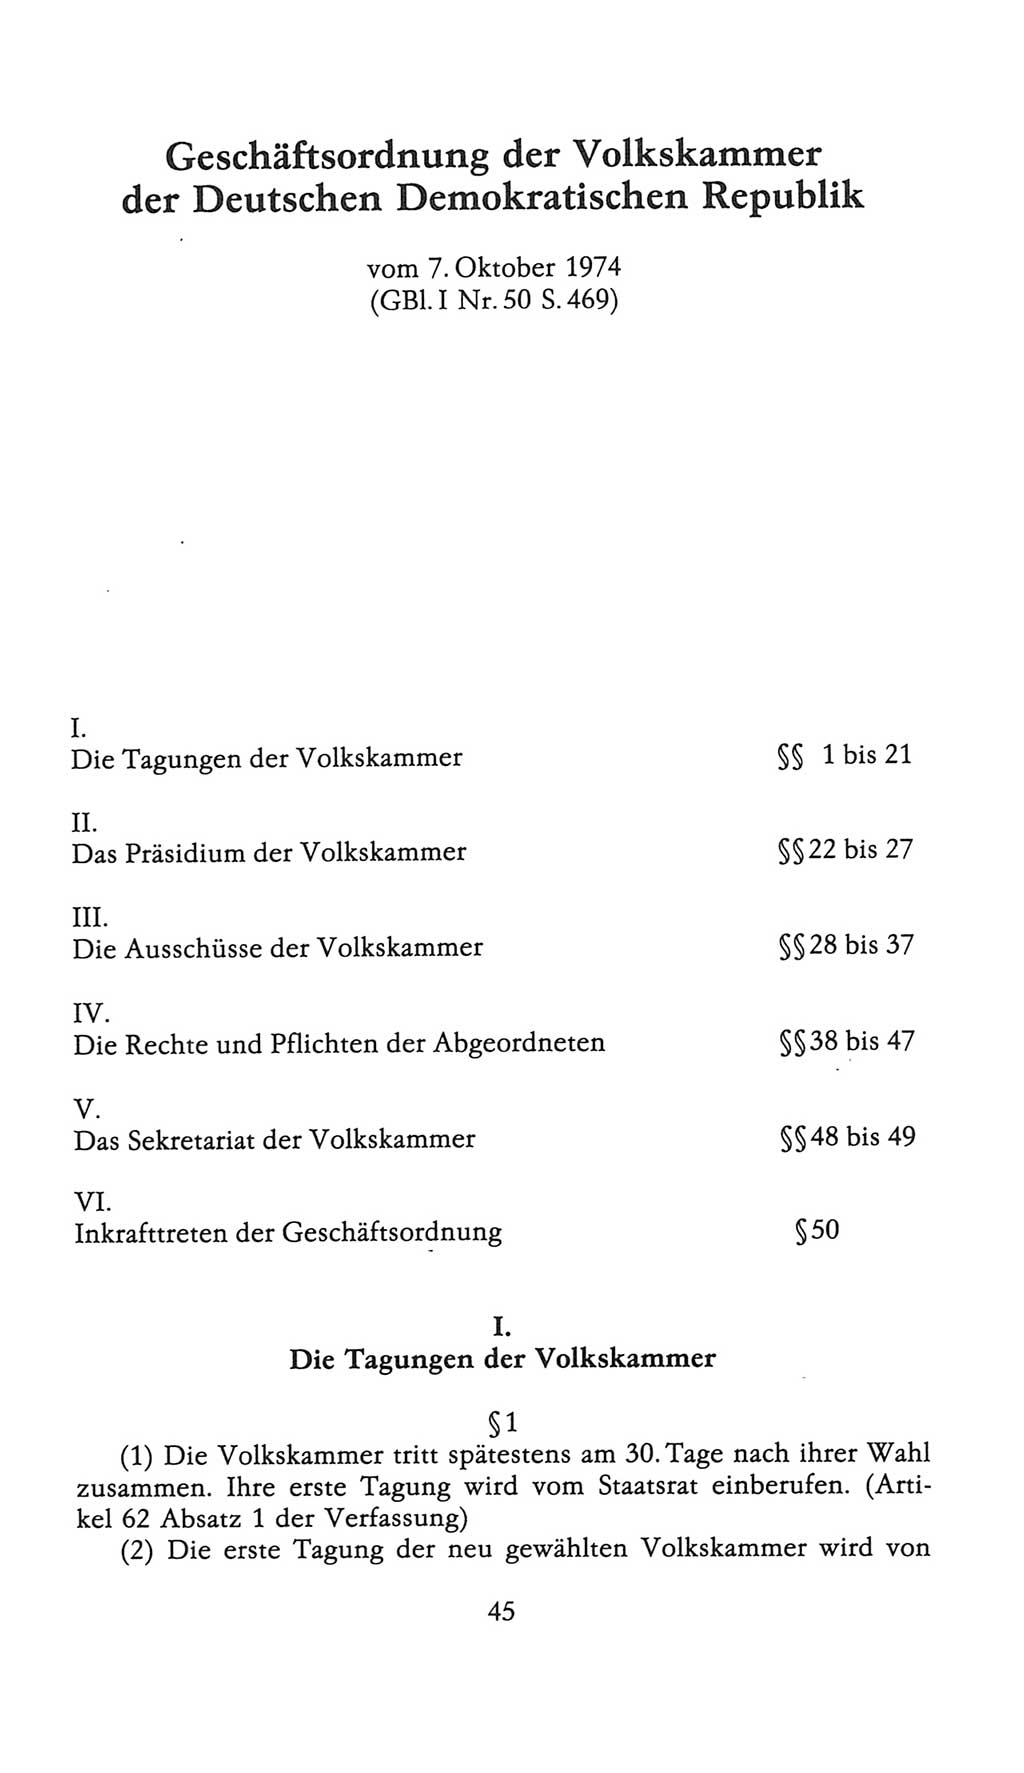 Volkskammer (VK) der Deutschen Demokratischen Republik (DDR), 9. Wahlperiode 1986-1990, Seite 45 (VK. DDR 9. WP. 1986-1990, S. 45)